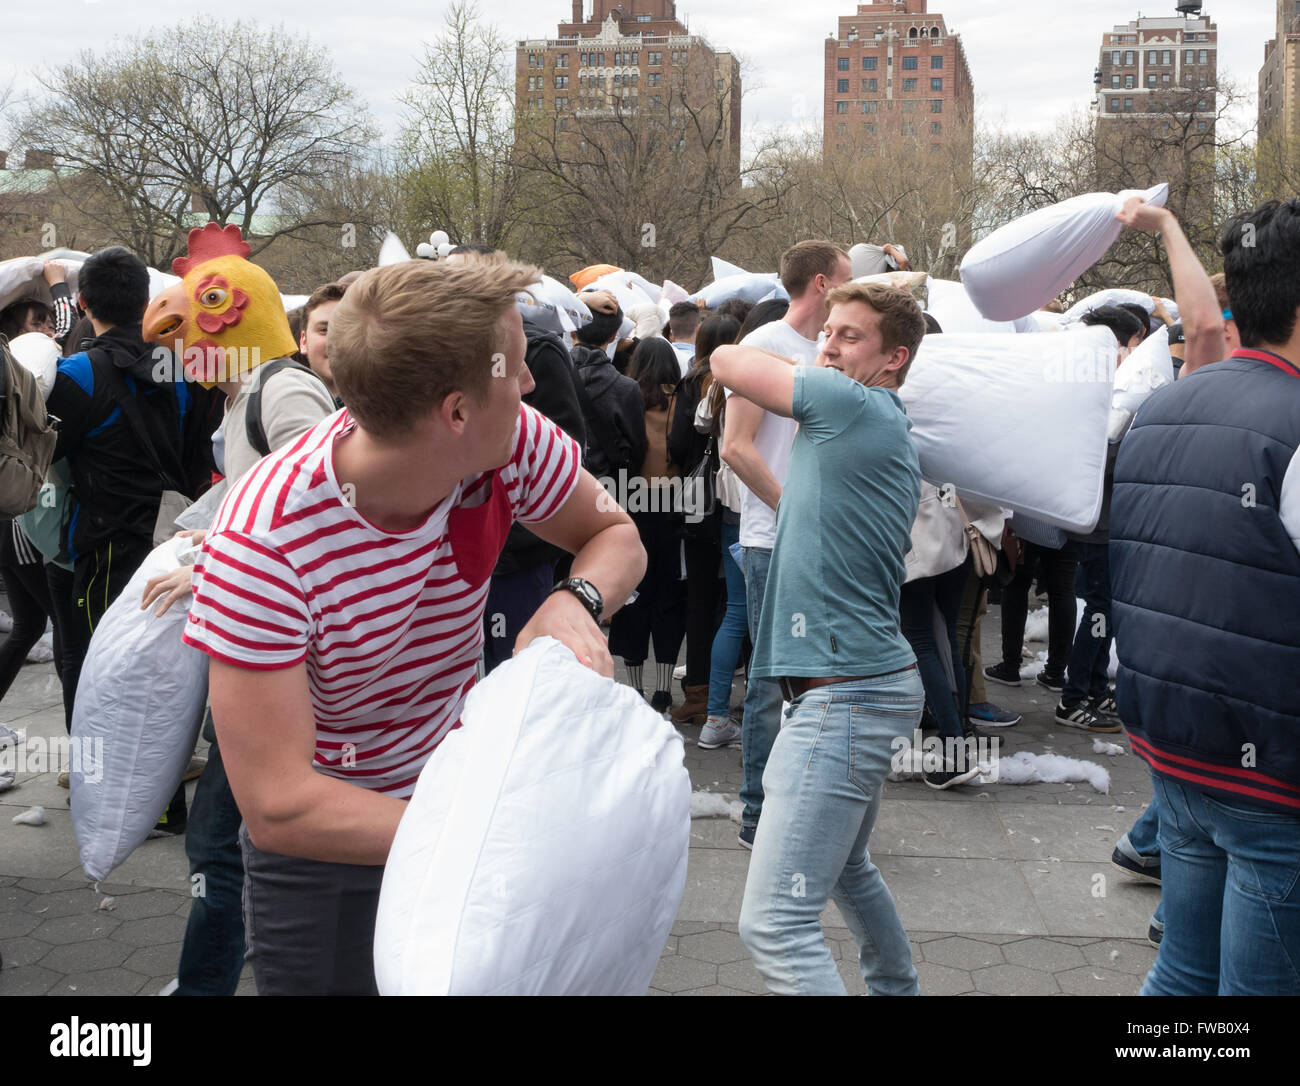 Les jeunes hommes / adolescents ayant un oreiller lutte à Washington Square Park dans les mondes plus grand pillow fight flash mob, New York. Banque D'Images